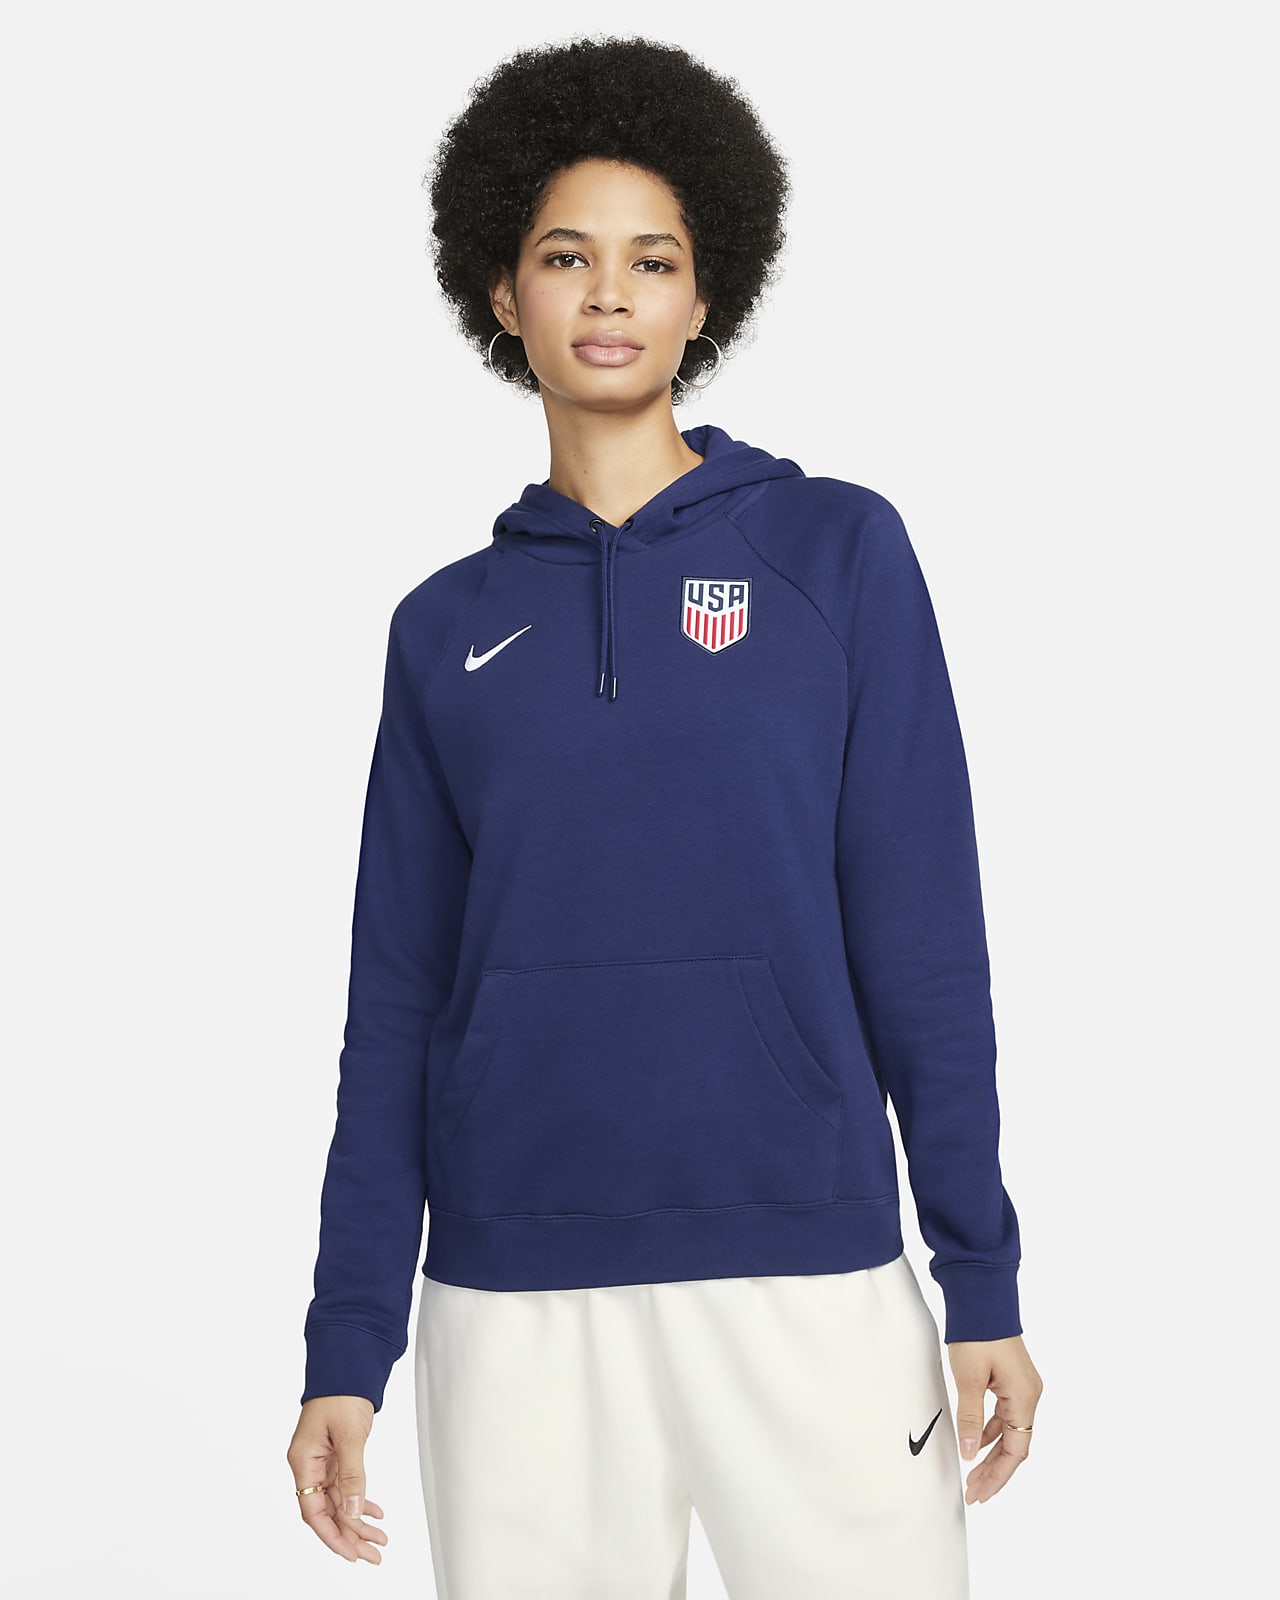 Sudadera con gorro de fútbol de tejido Fleece sin cierre para mujer de EE. UU.